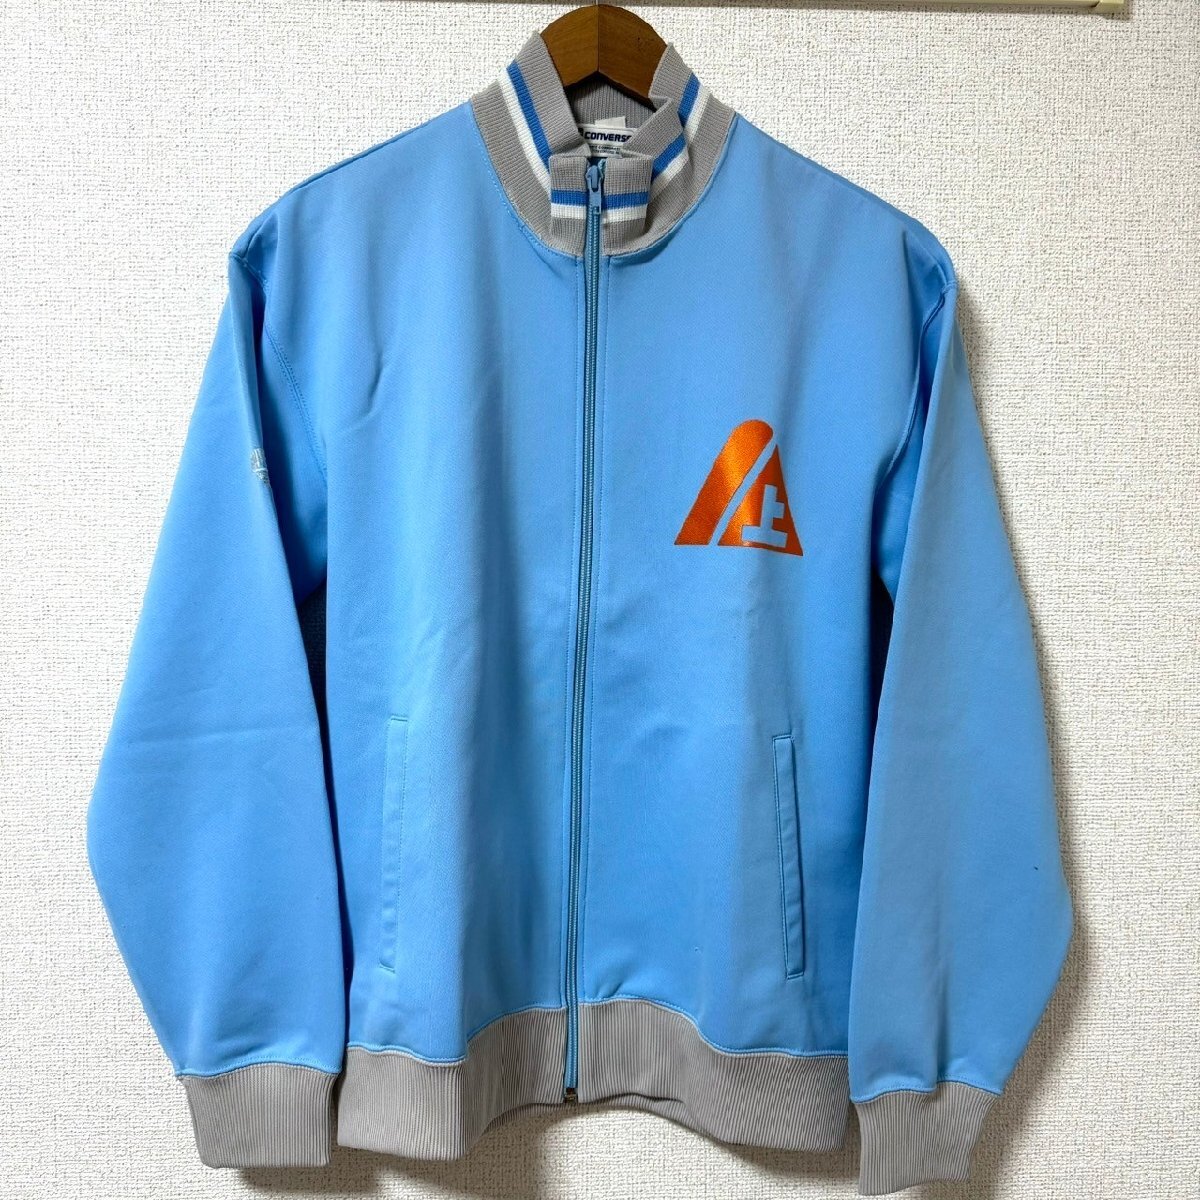 (^w^)b CONVERSE Converse 80s 90s Vintage джерси верх и низ выставить спортивная куртка брюки бледно-голубой JASPO L O 8356EE